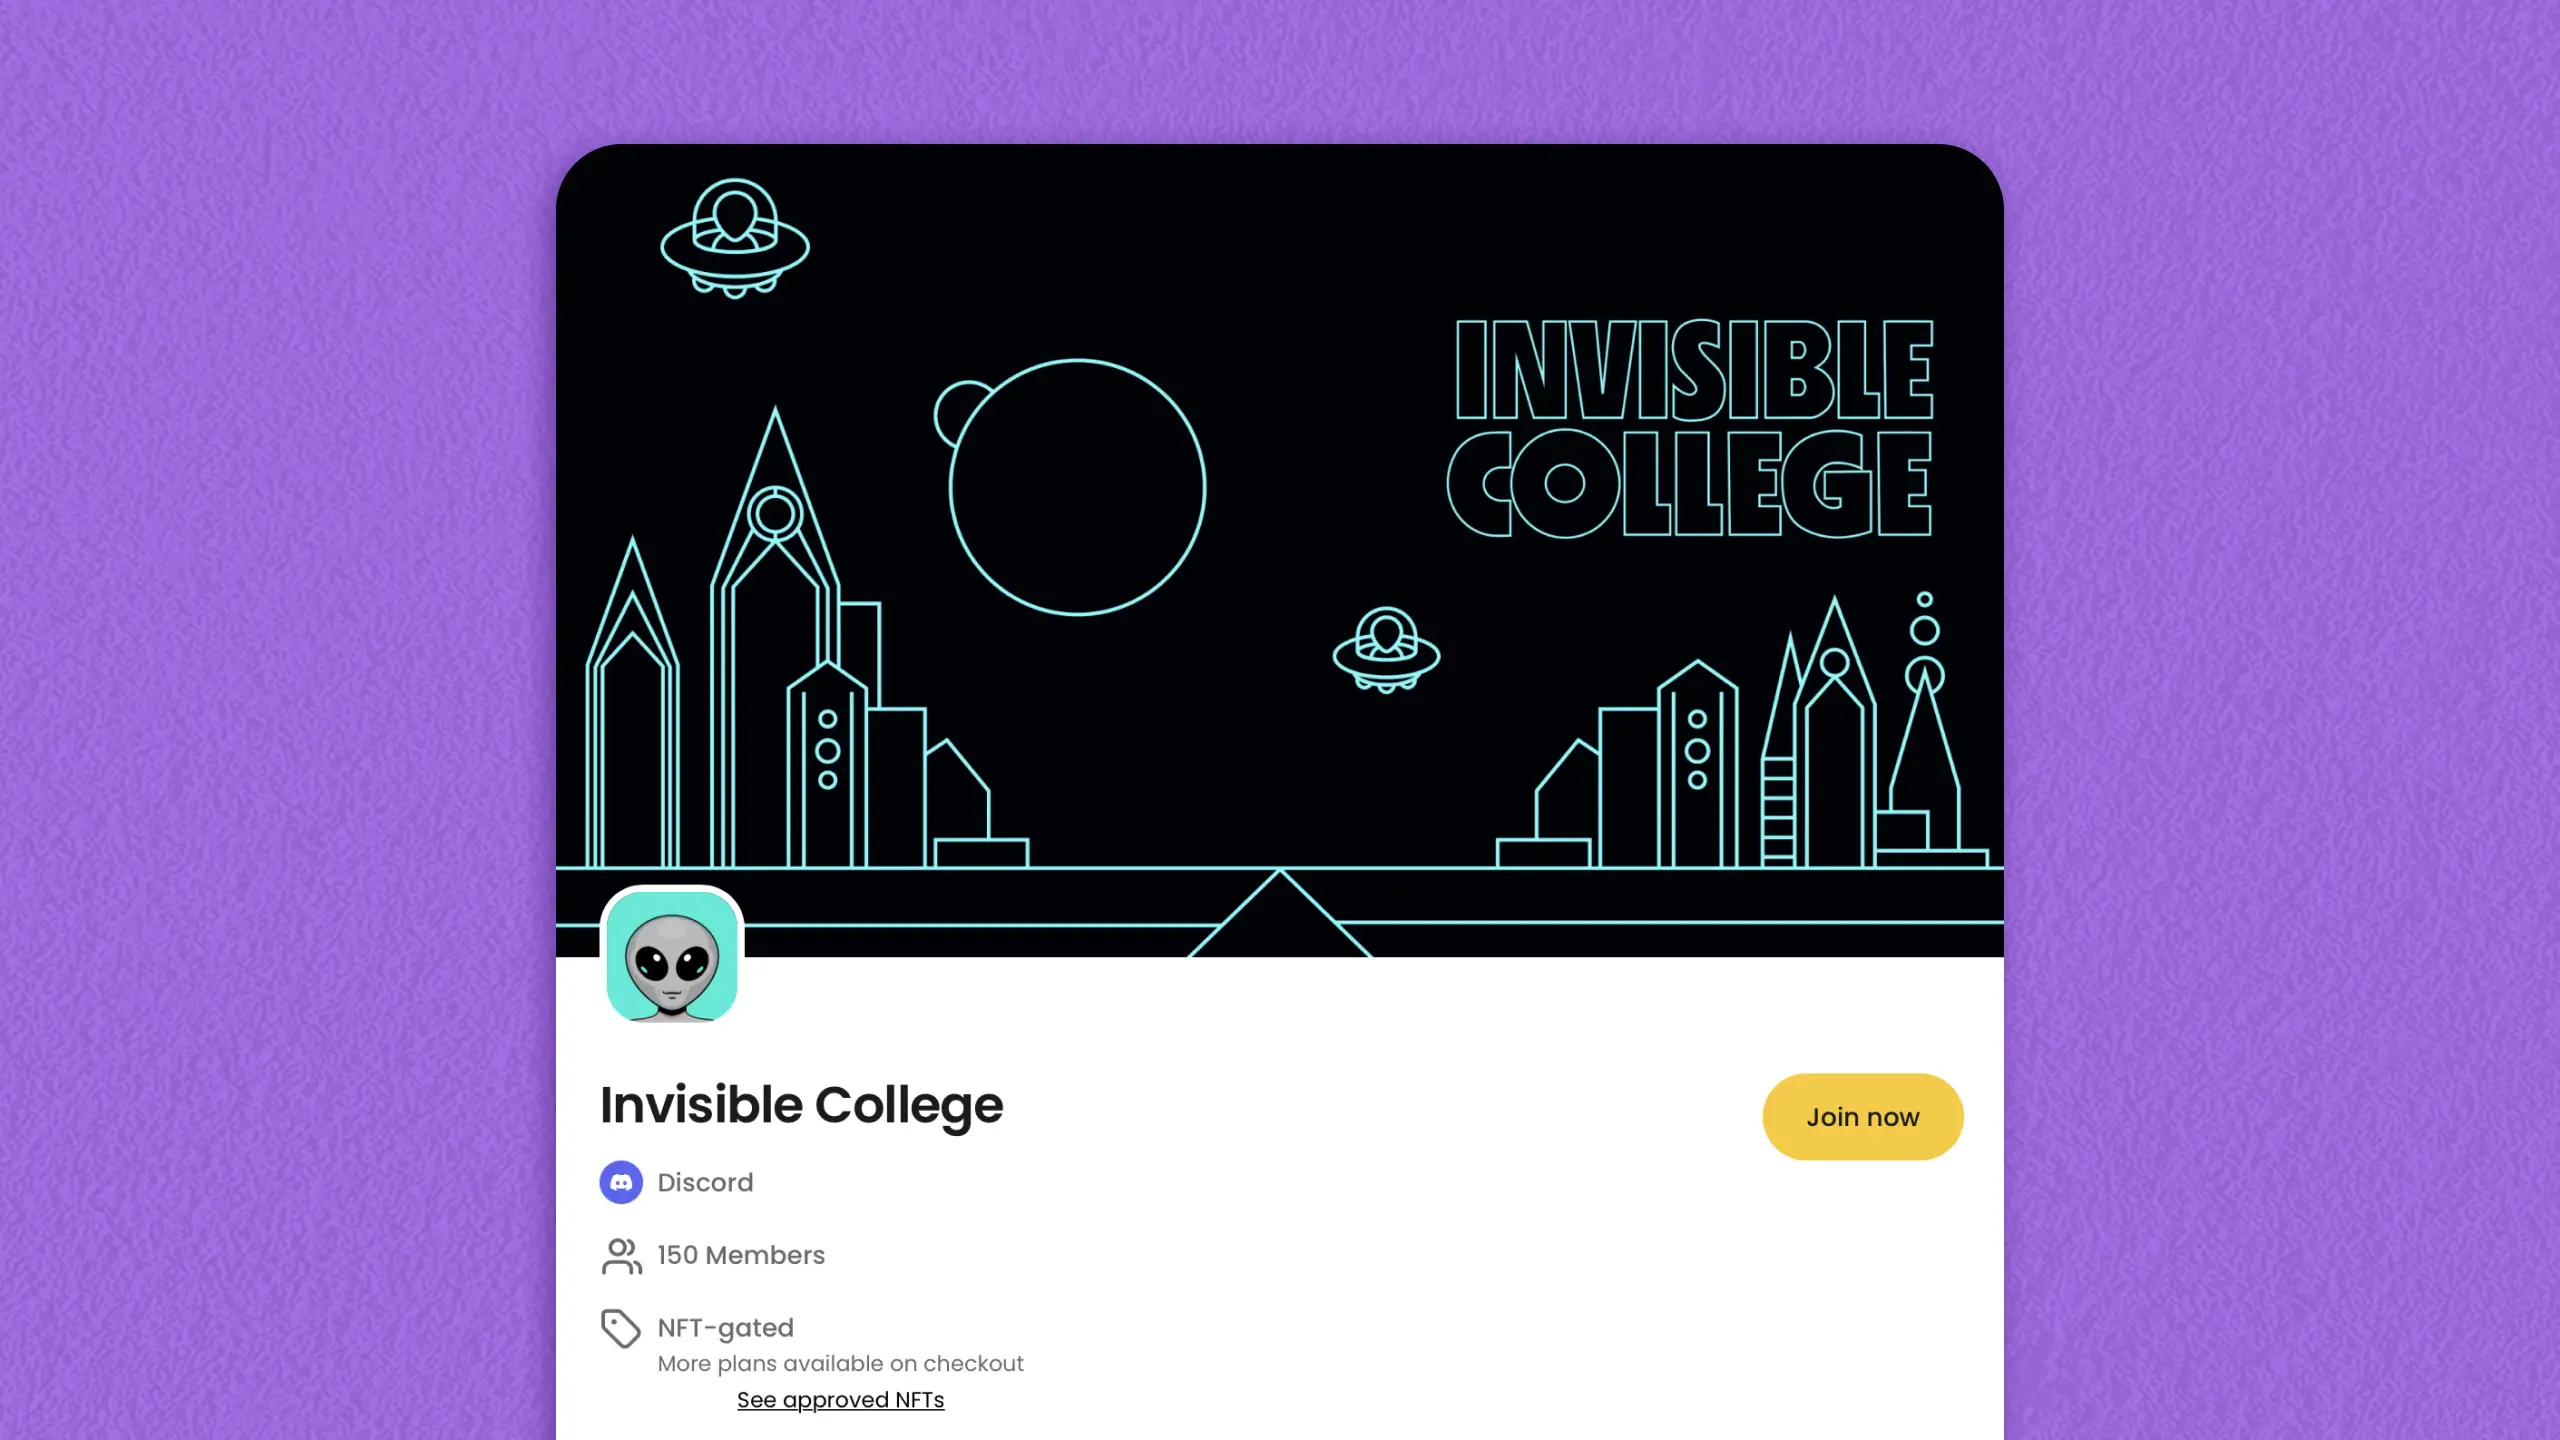 Invisible college